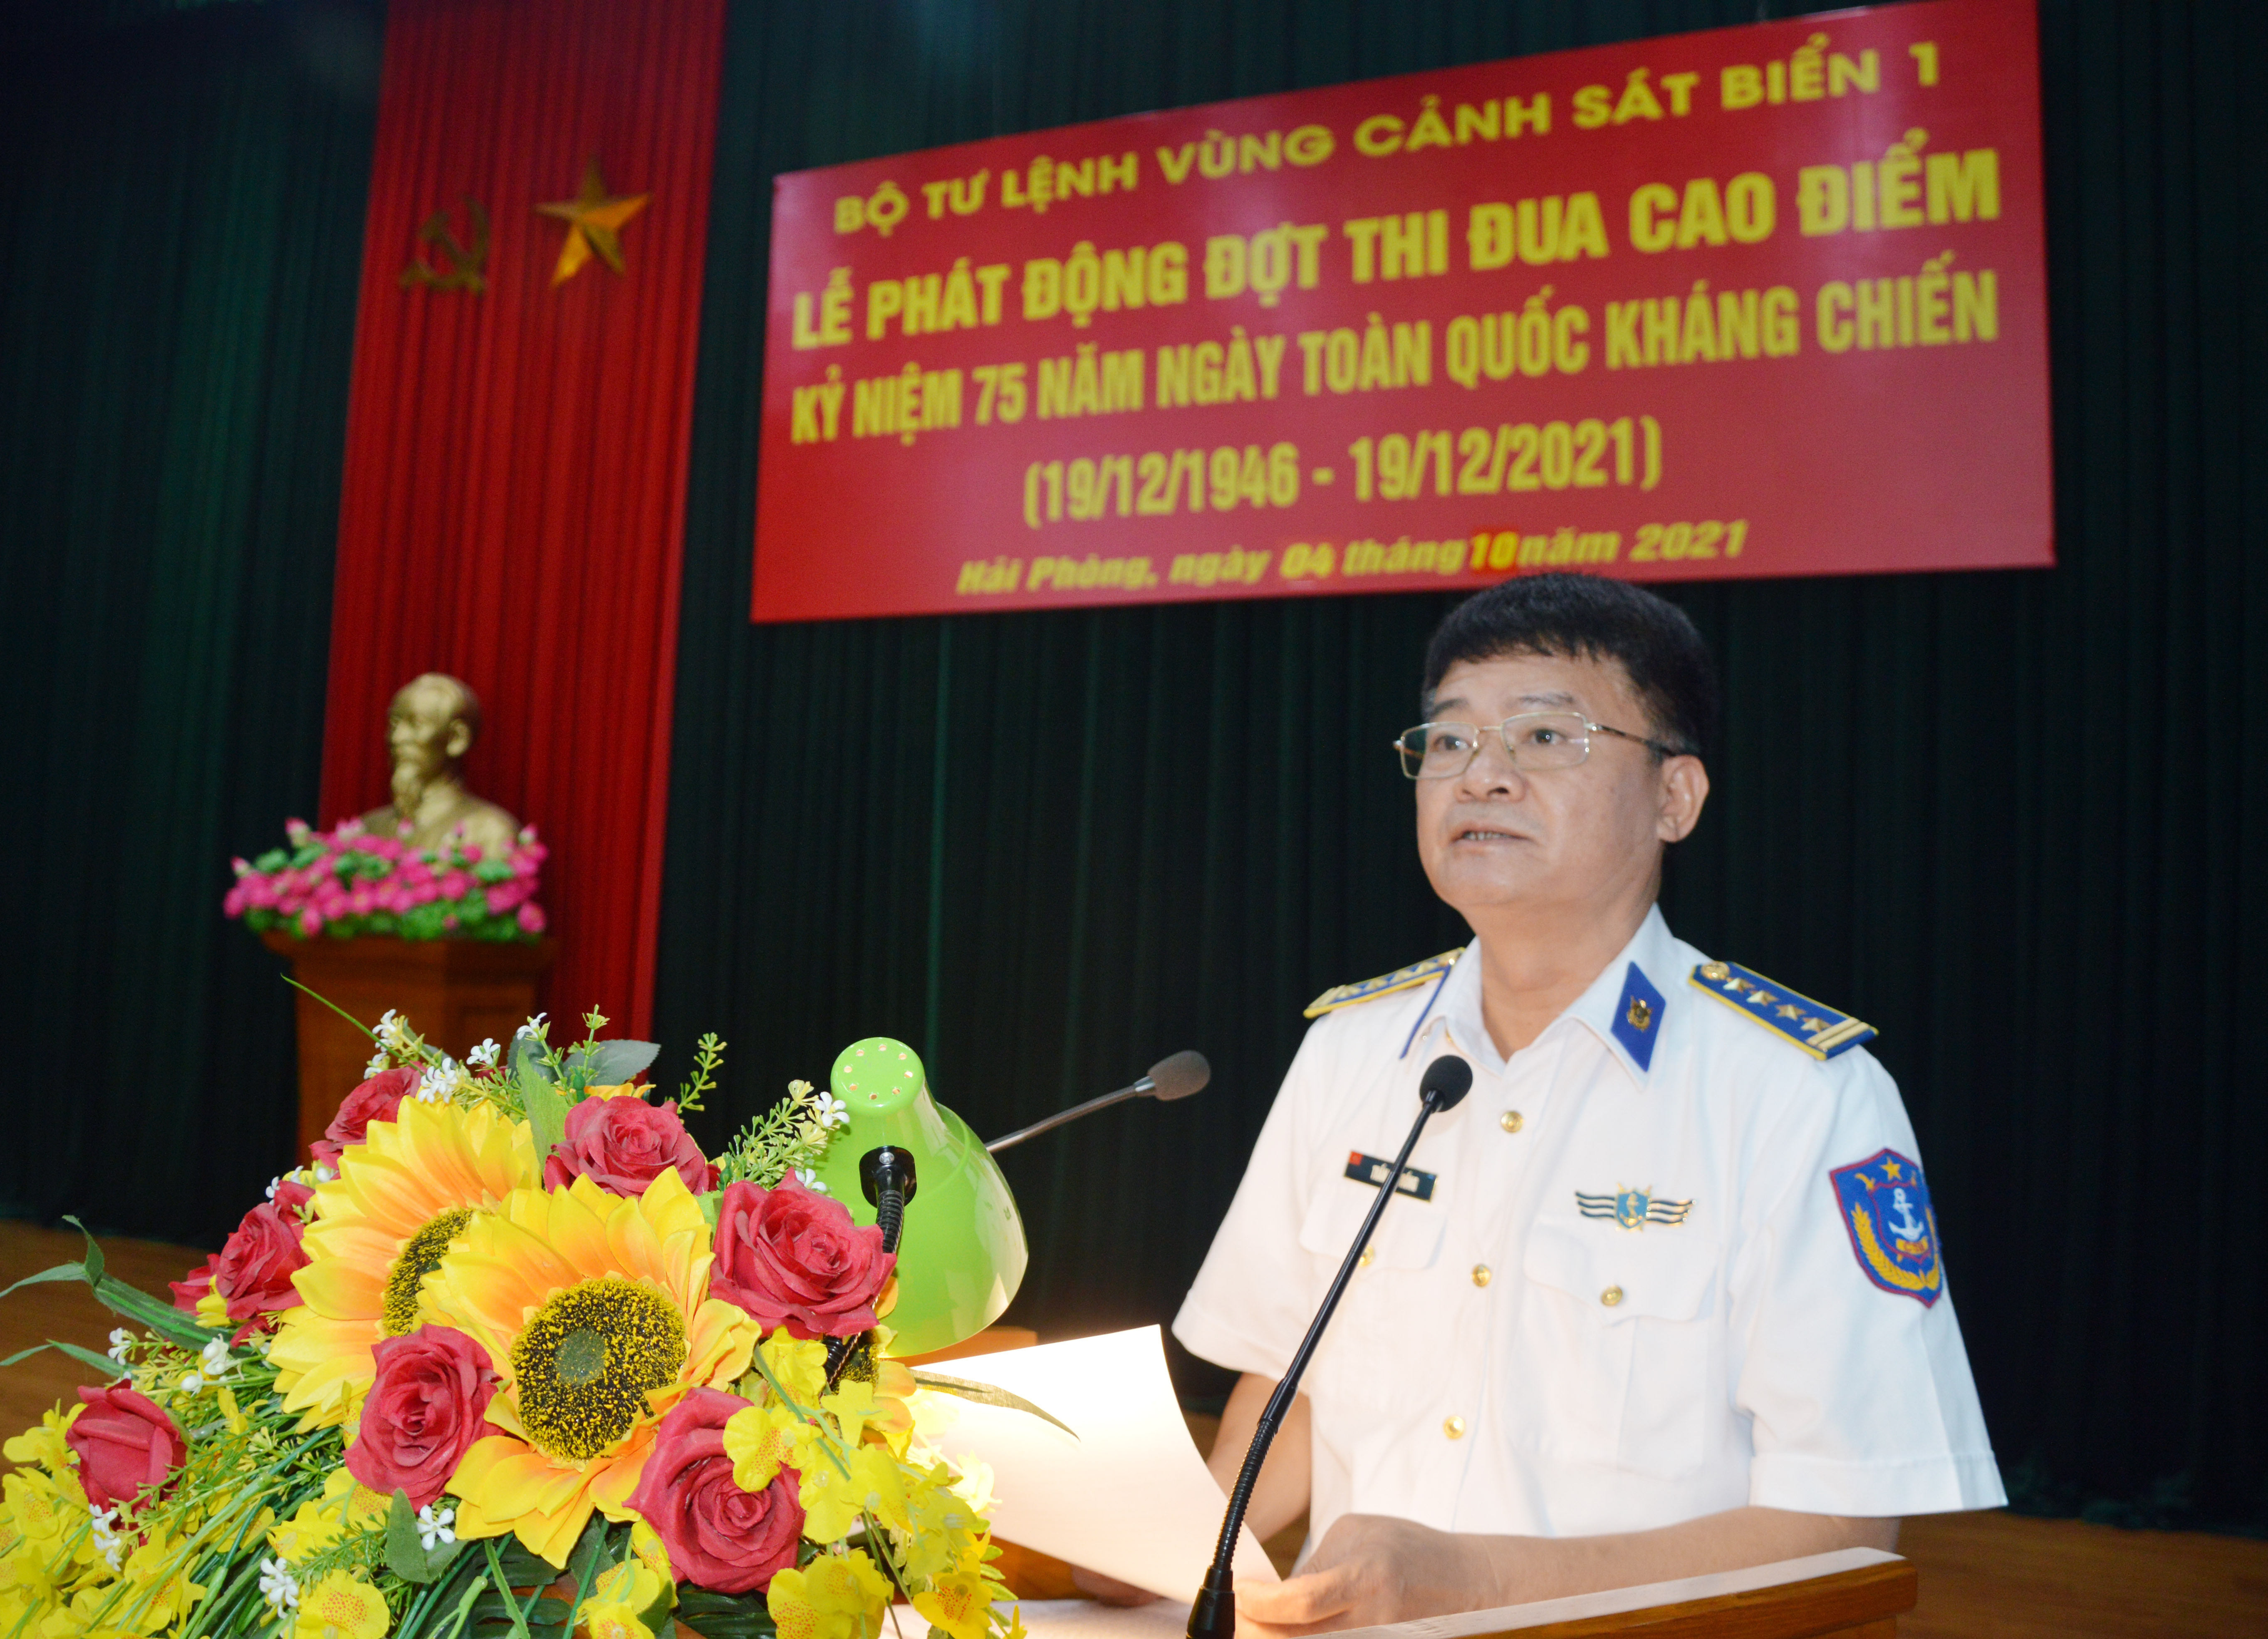 Đại tá Trần Văn Rồng phát động đợt thi đua cao điểm